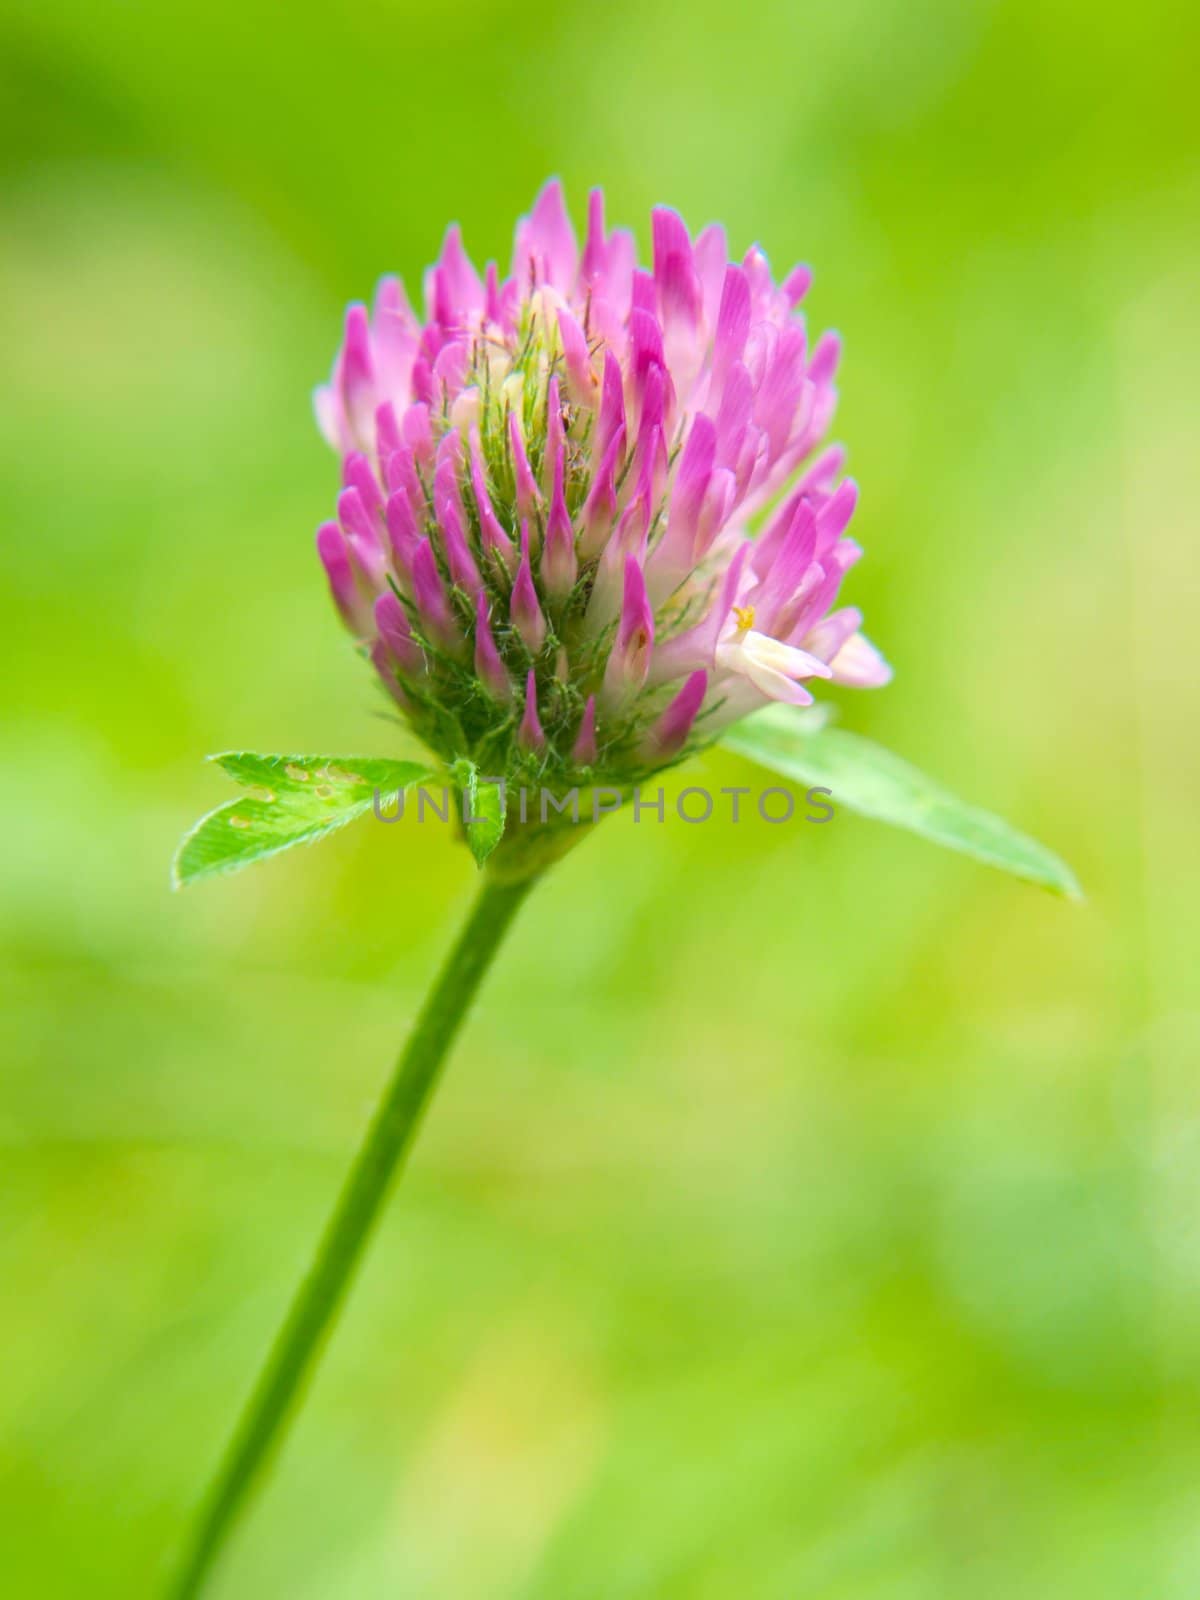 Closeup of pink clover flower, towards green by Arvebettum